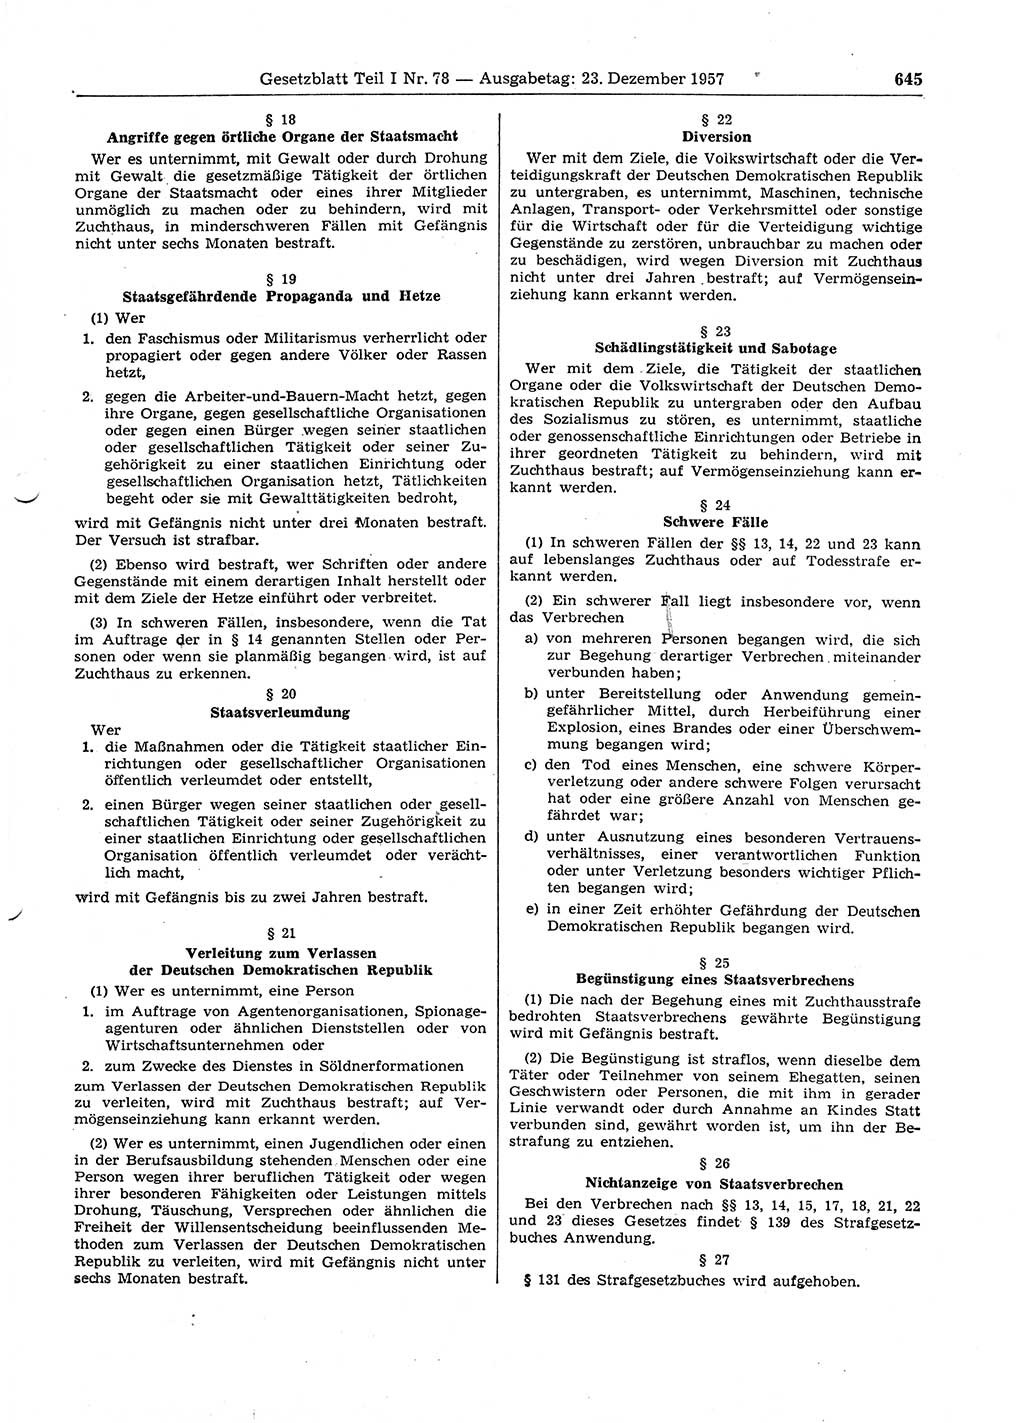 Gesetzblatt (GBl.) der Deutschen Demokratischen Republik (DDR) Teil Ⅰ 1957, Seite 645 (GBl. DDR Ⅰ 1957, S. 645)